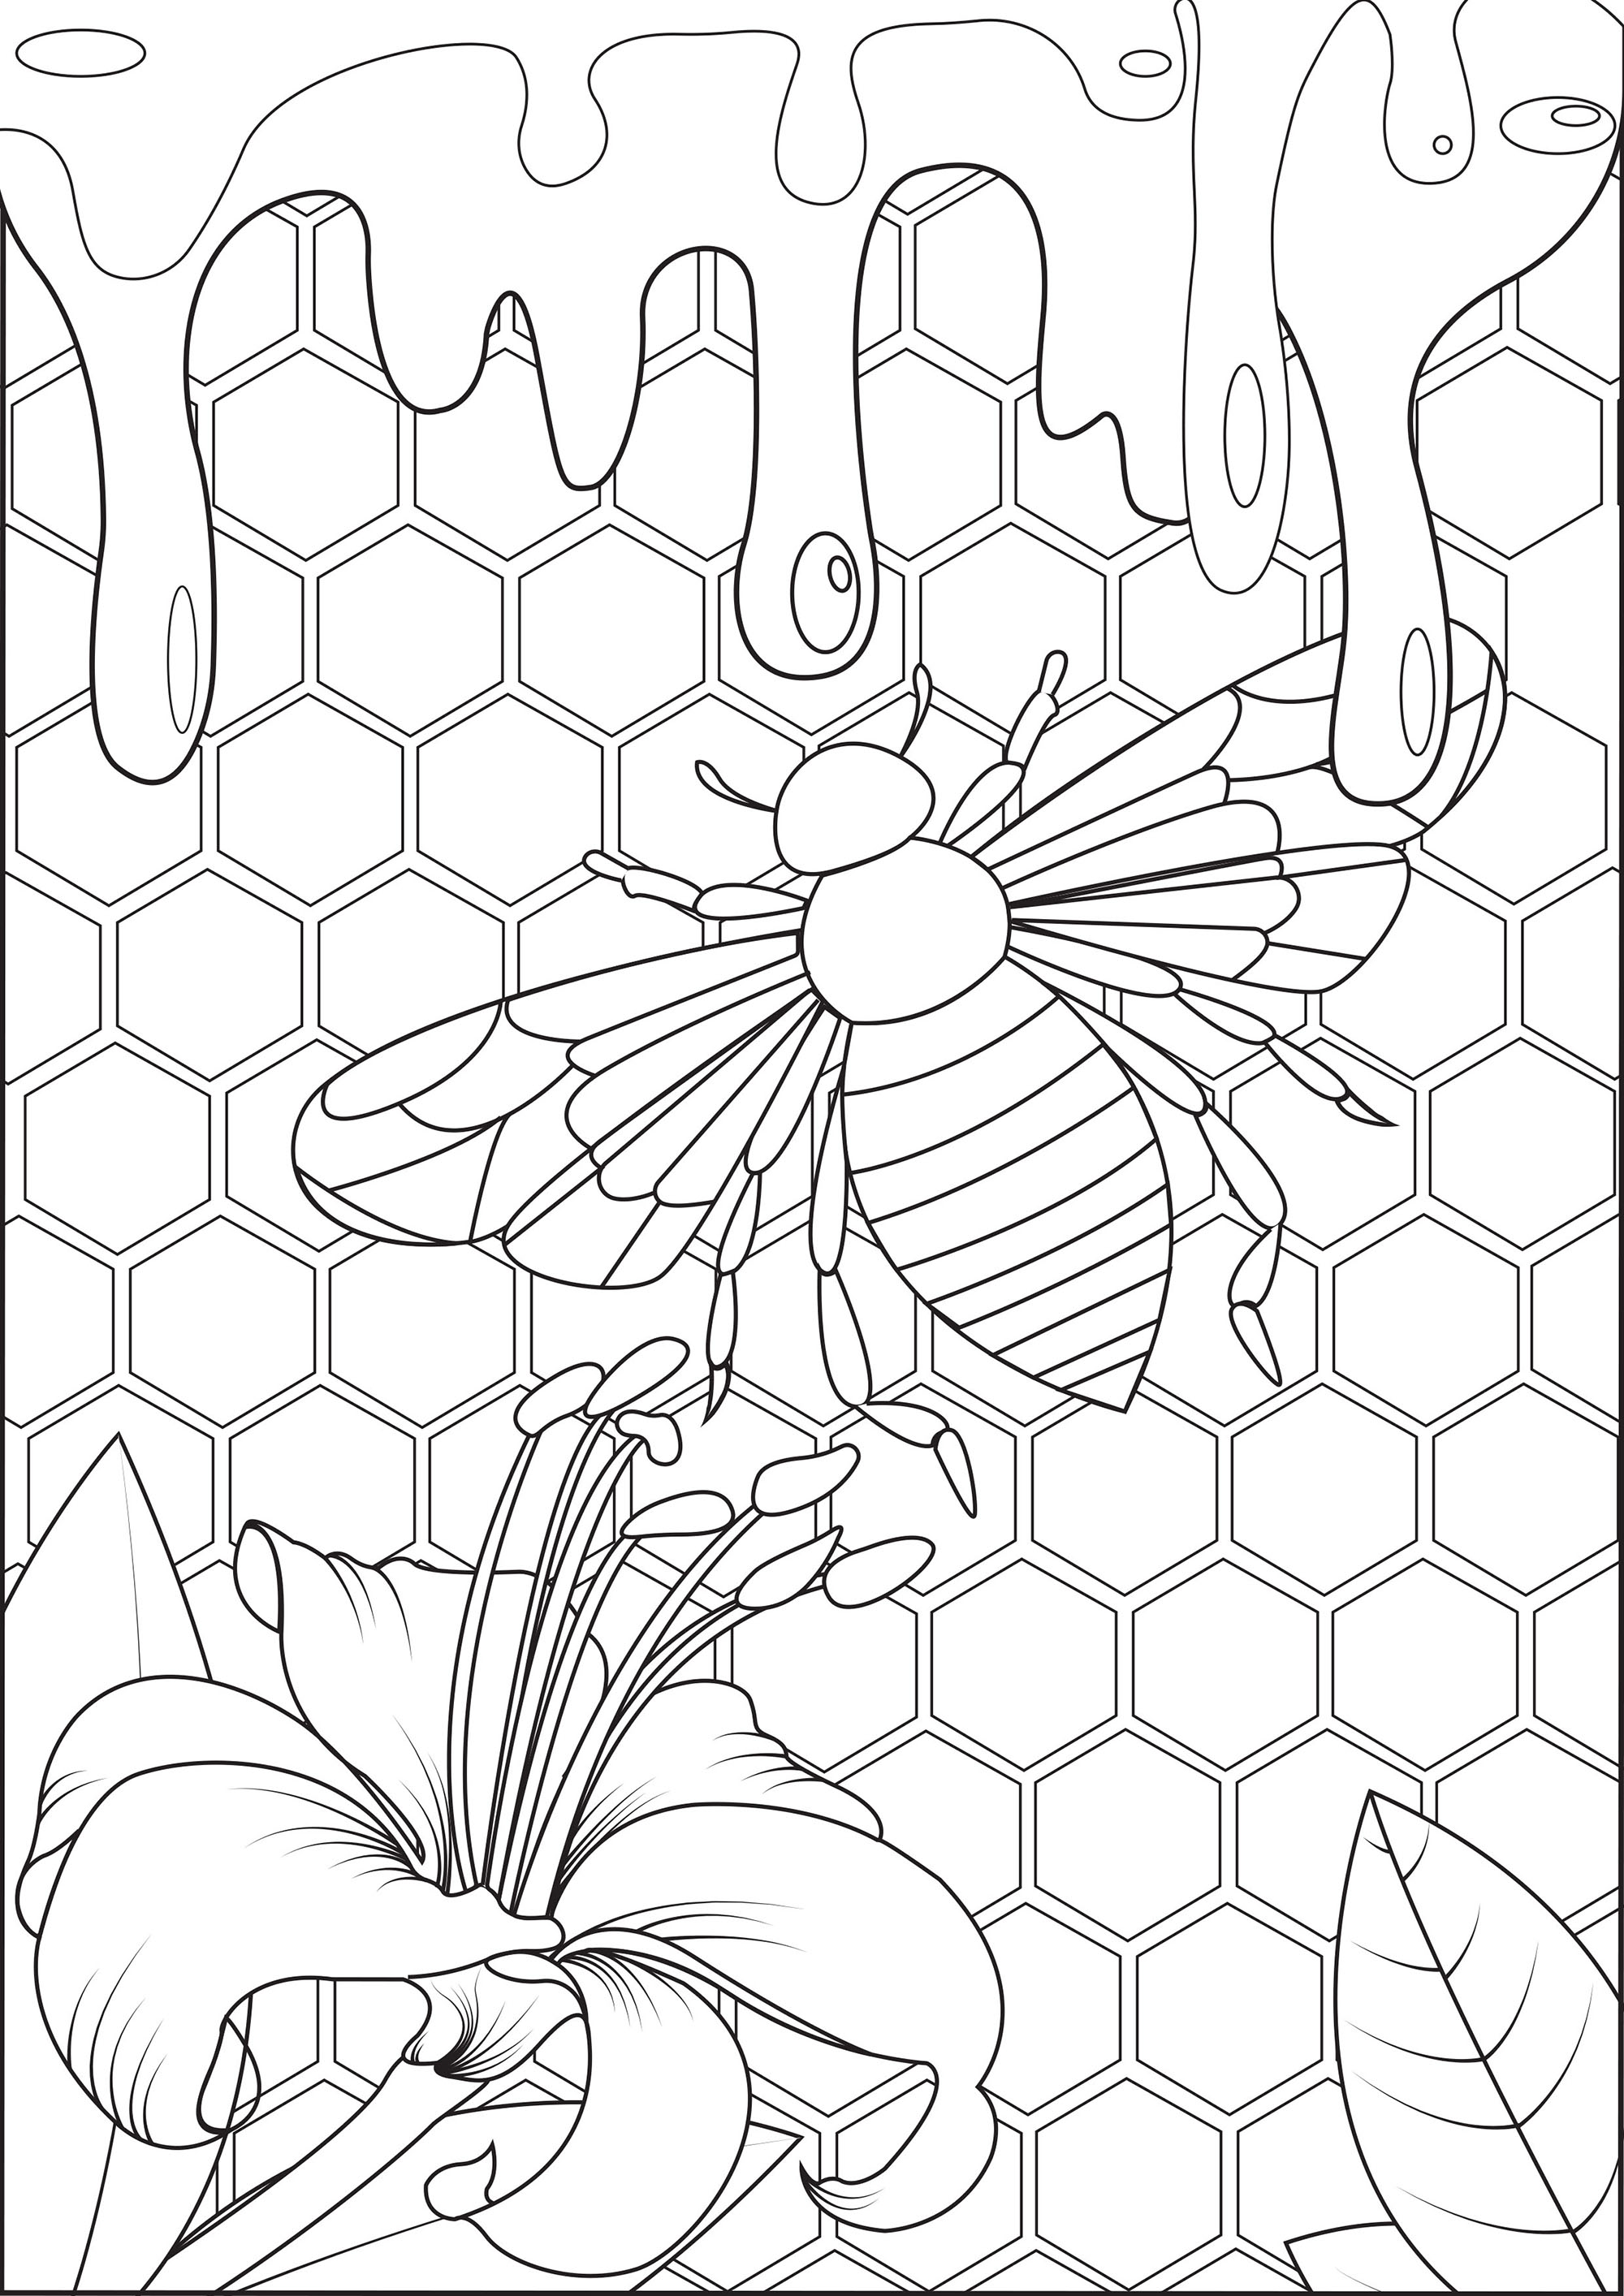 Tauchen Sie ein in das Herz des Bienenstocks und probieren Sie diesen frischen Honig!. Diese Malvorlage ist eine Einladung, in die Welt der Bienen einzutauchen und ihre Welt zu entdecken .., Künstler : Arwen